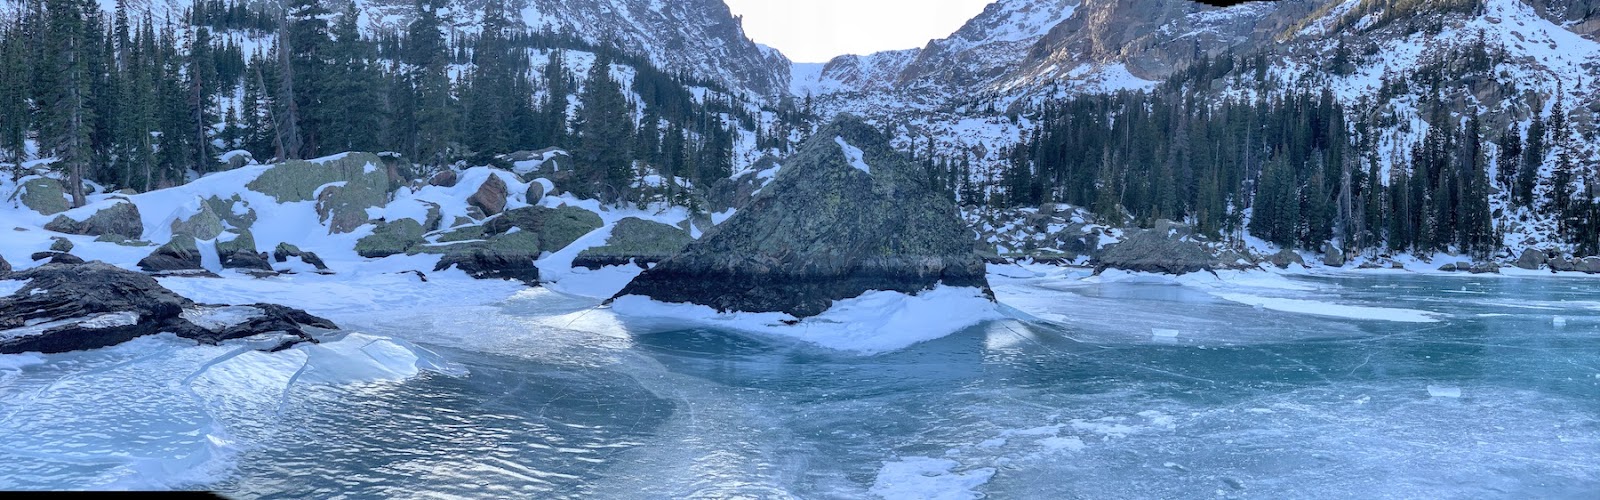 Frozen Lake at RMNP.